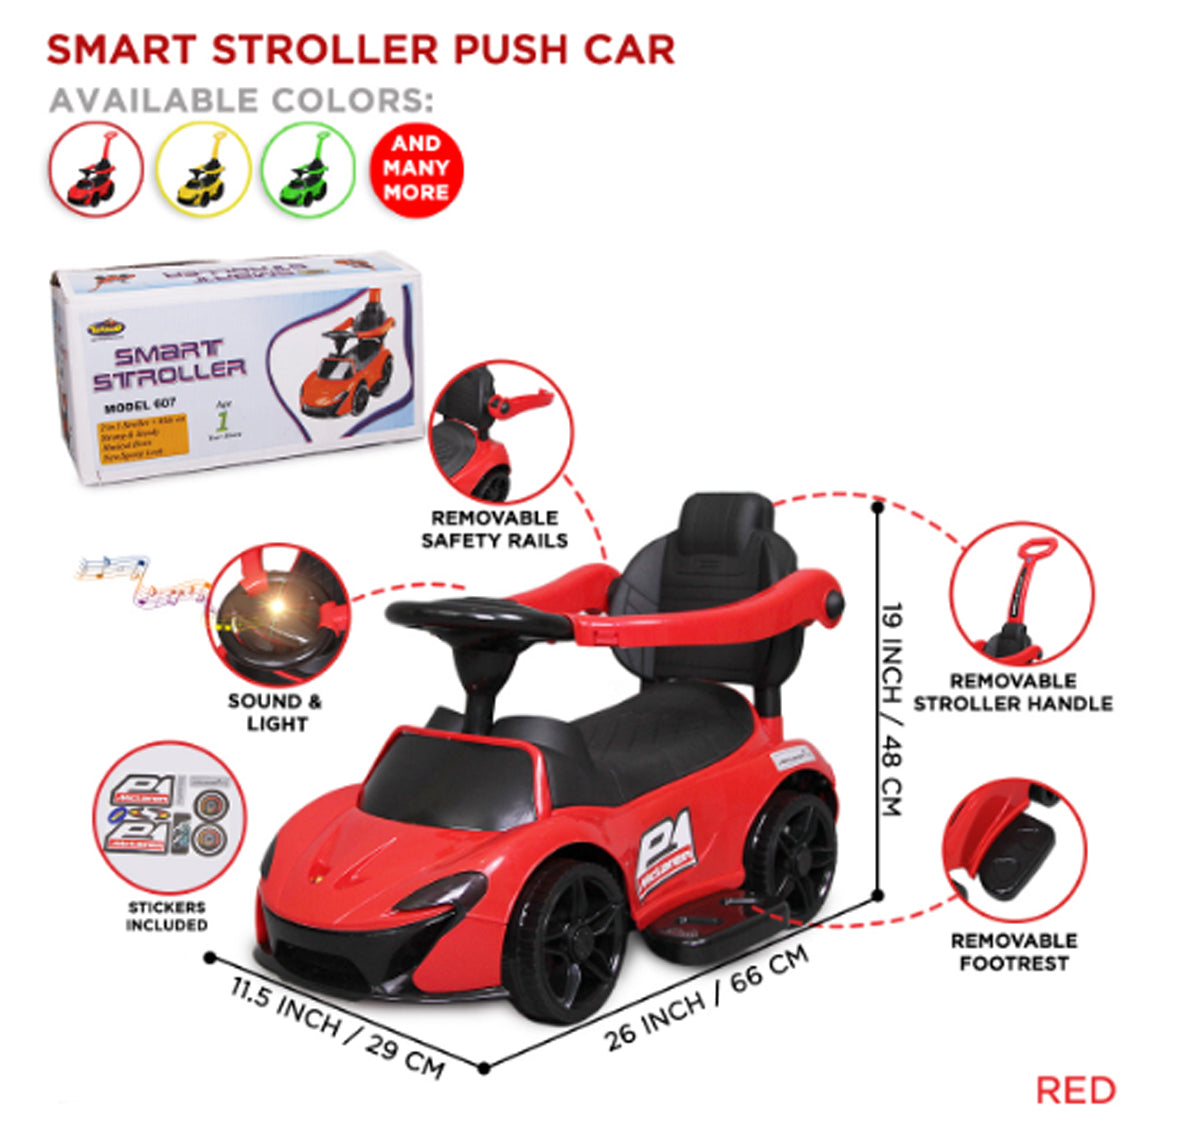 Mclaren Smart Stroller Ride On Push Car For Kids – Car – Push car - Baby car - Kids car - Smart Stroller – Baby Smart stroller – Baby push car - Kids push car